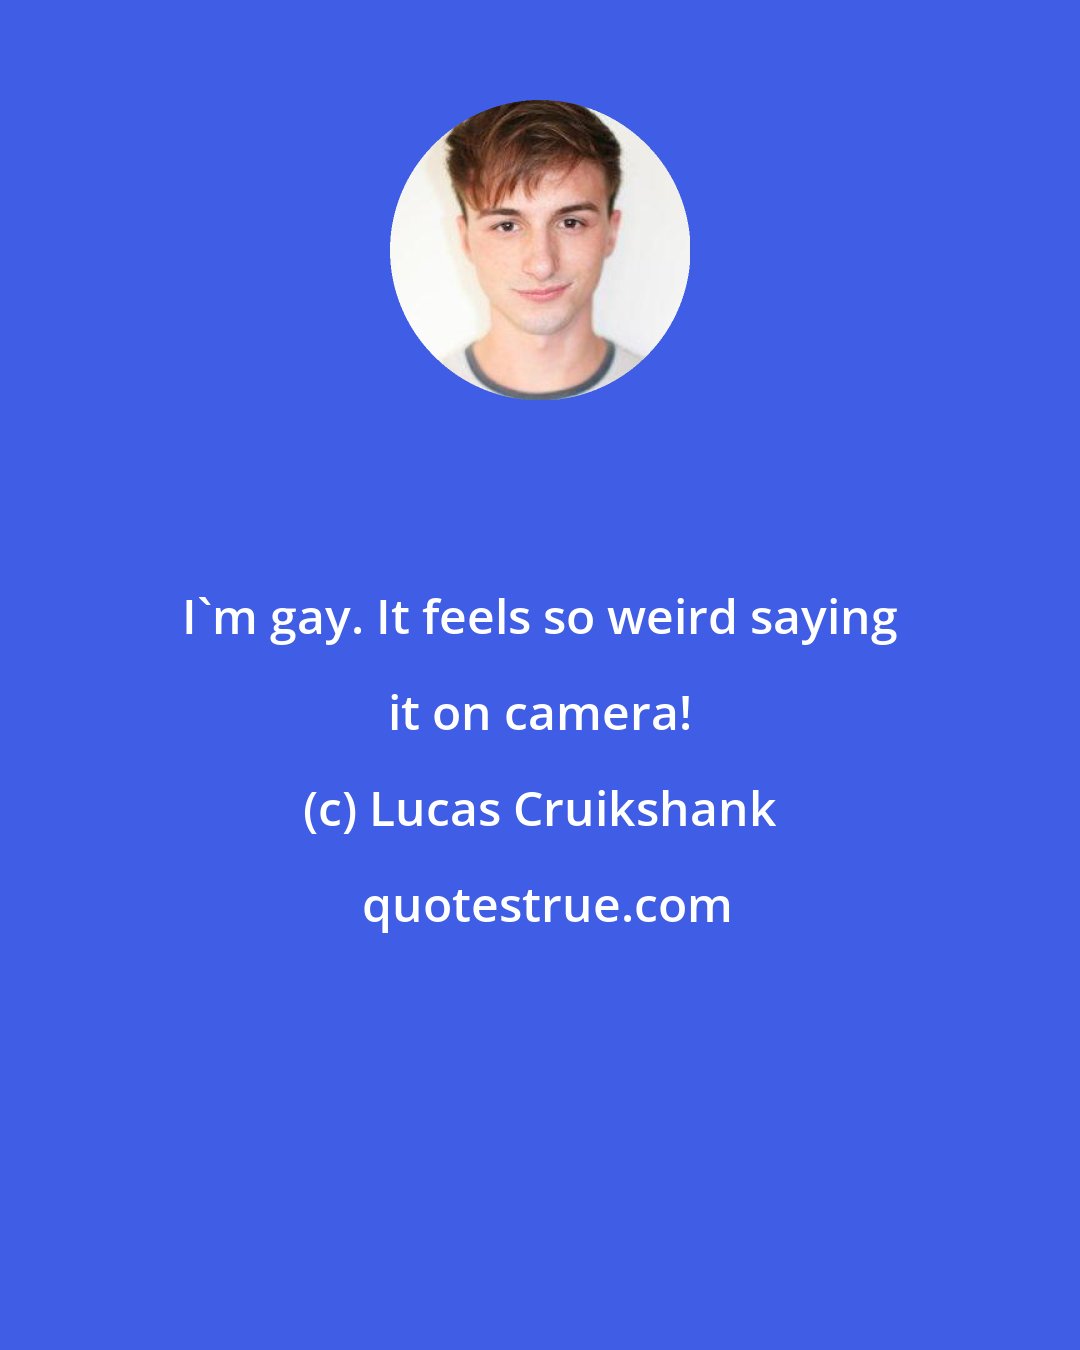 Lucas Cruikshank: I'm gay. It feels so weird saying it on camera!